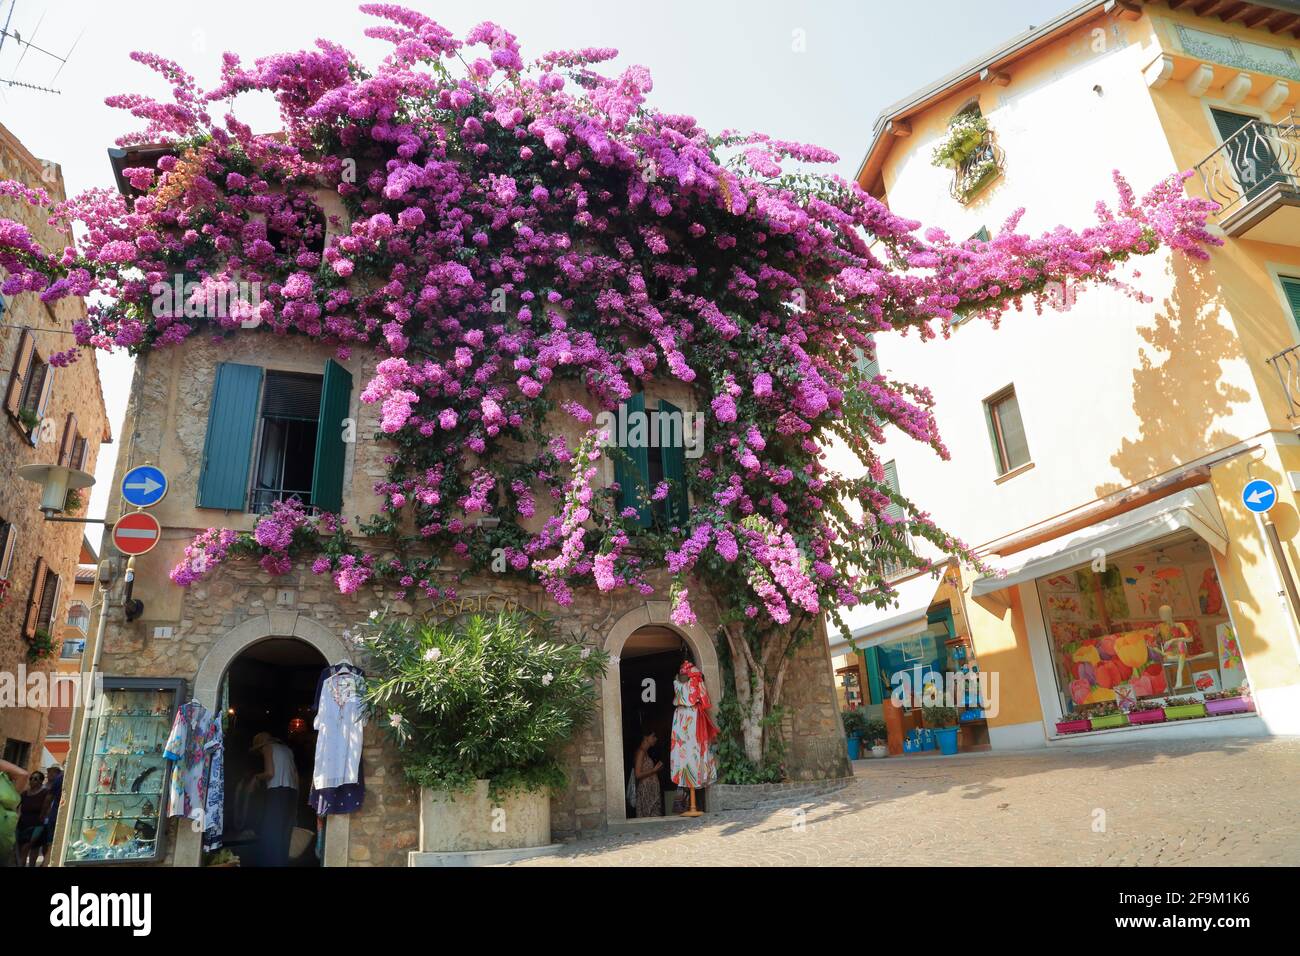 Sirmione, lac de Garde. Bougainvilliers violets fleuris dans la vieille maison de ville. Lago di Garda, Gardasee, Italie Banque D'Images